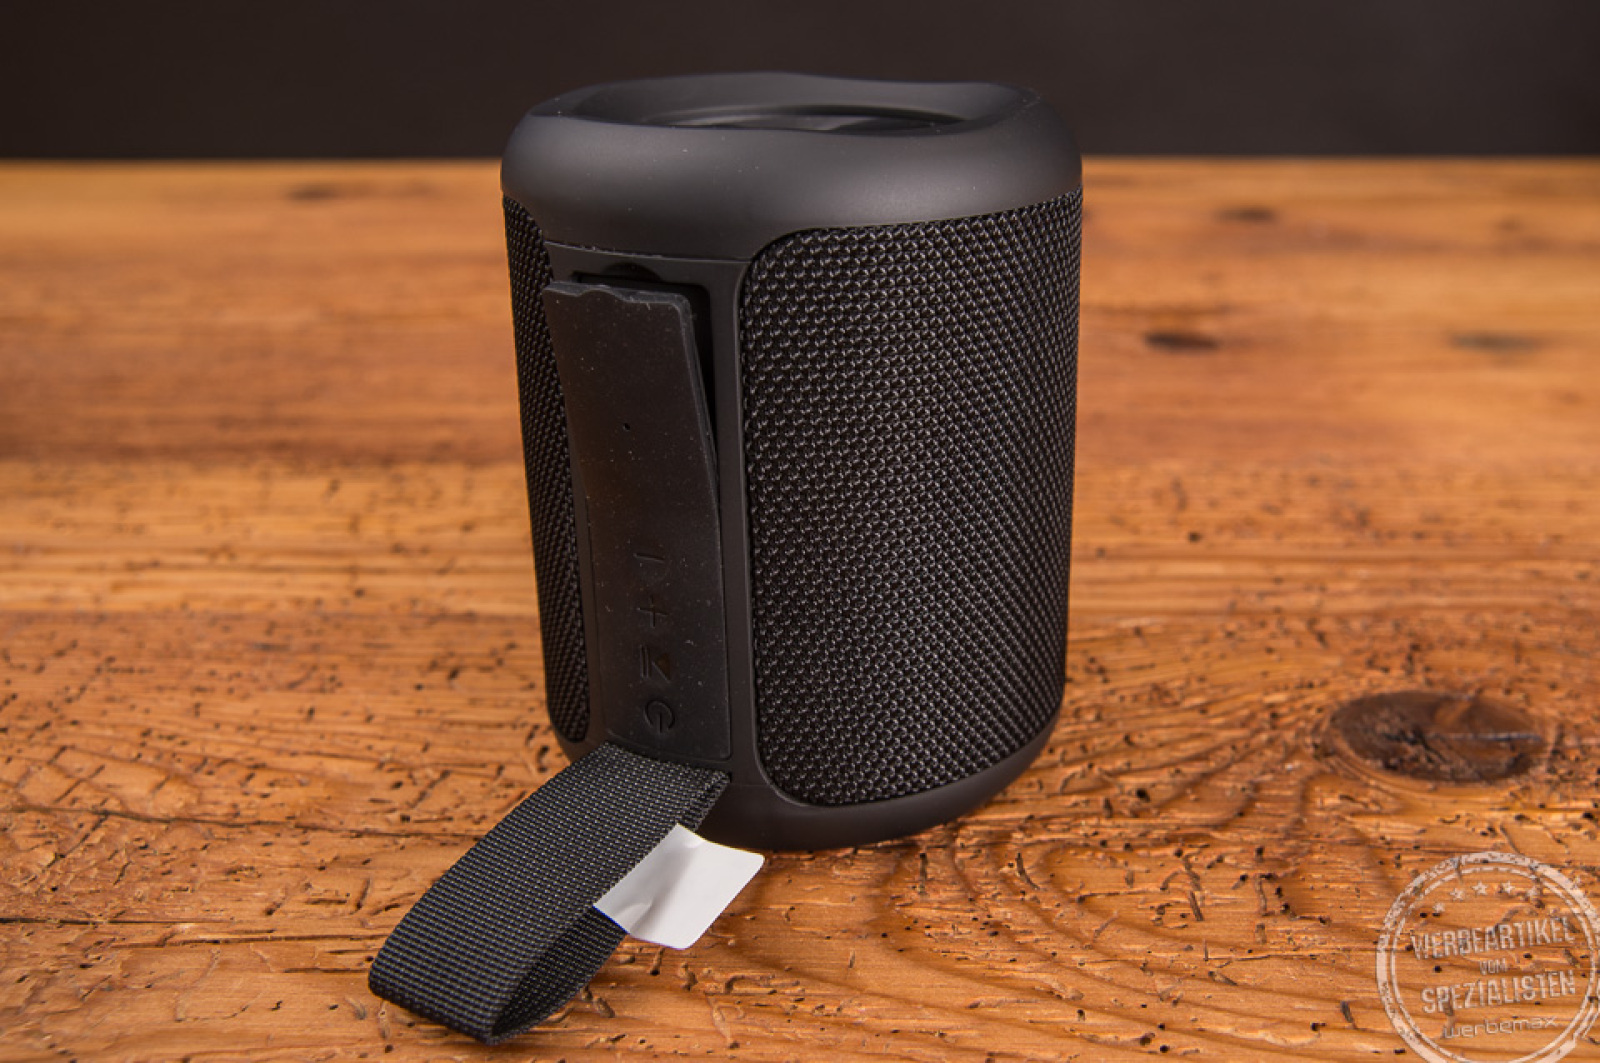 Rückseite des schwarzen Bluetooth Speakers mit Silikonschlaufe und Menüführung in schwarz zu sehen